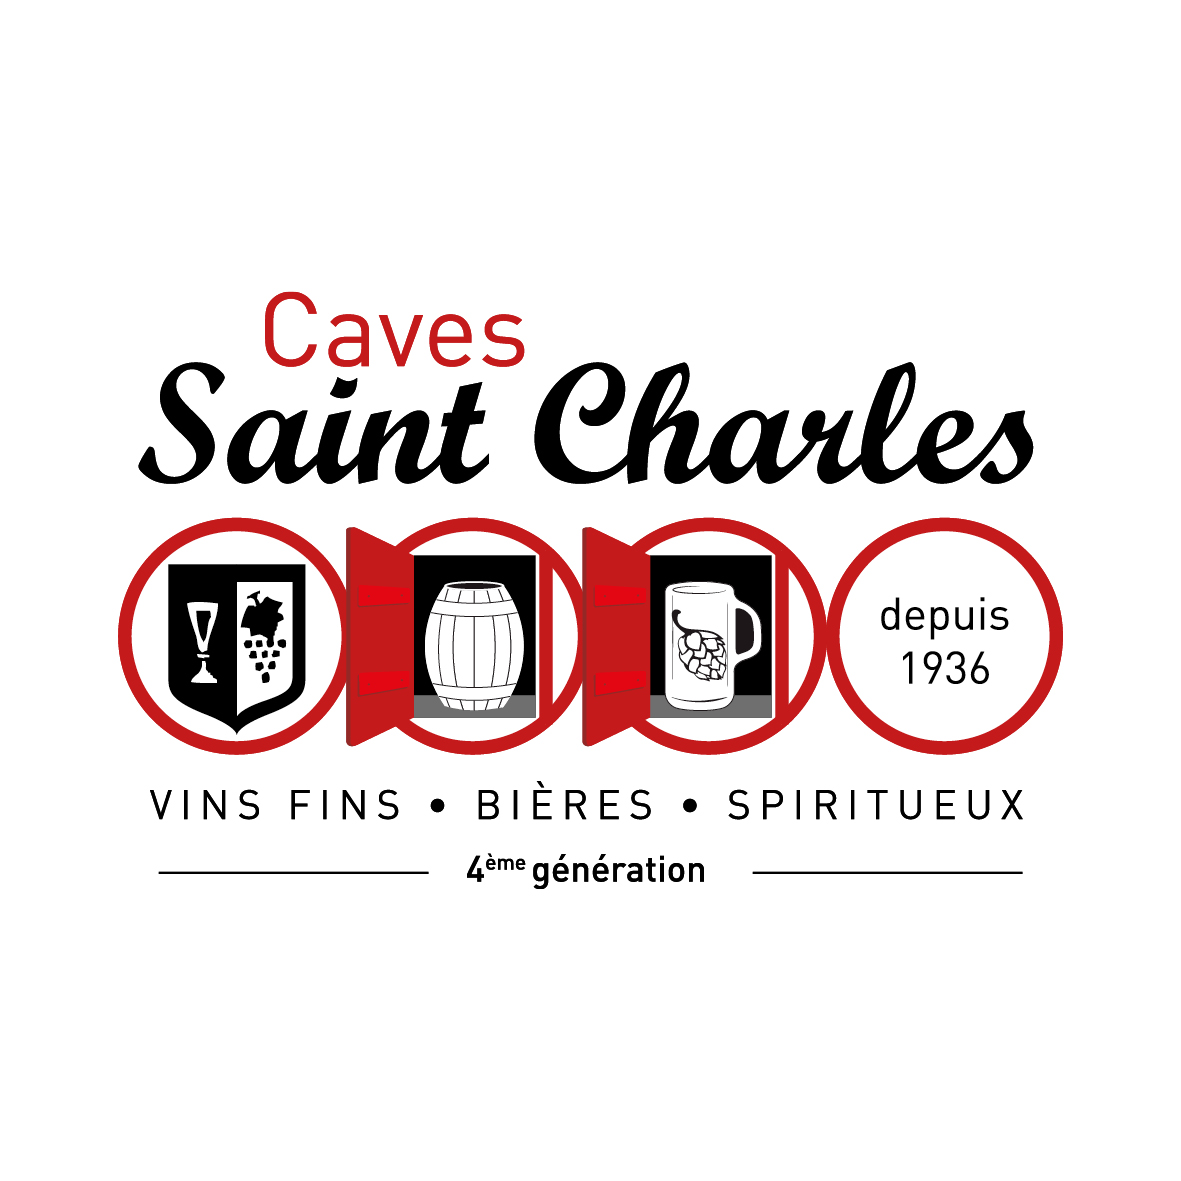 Caves Saint Charles